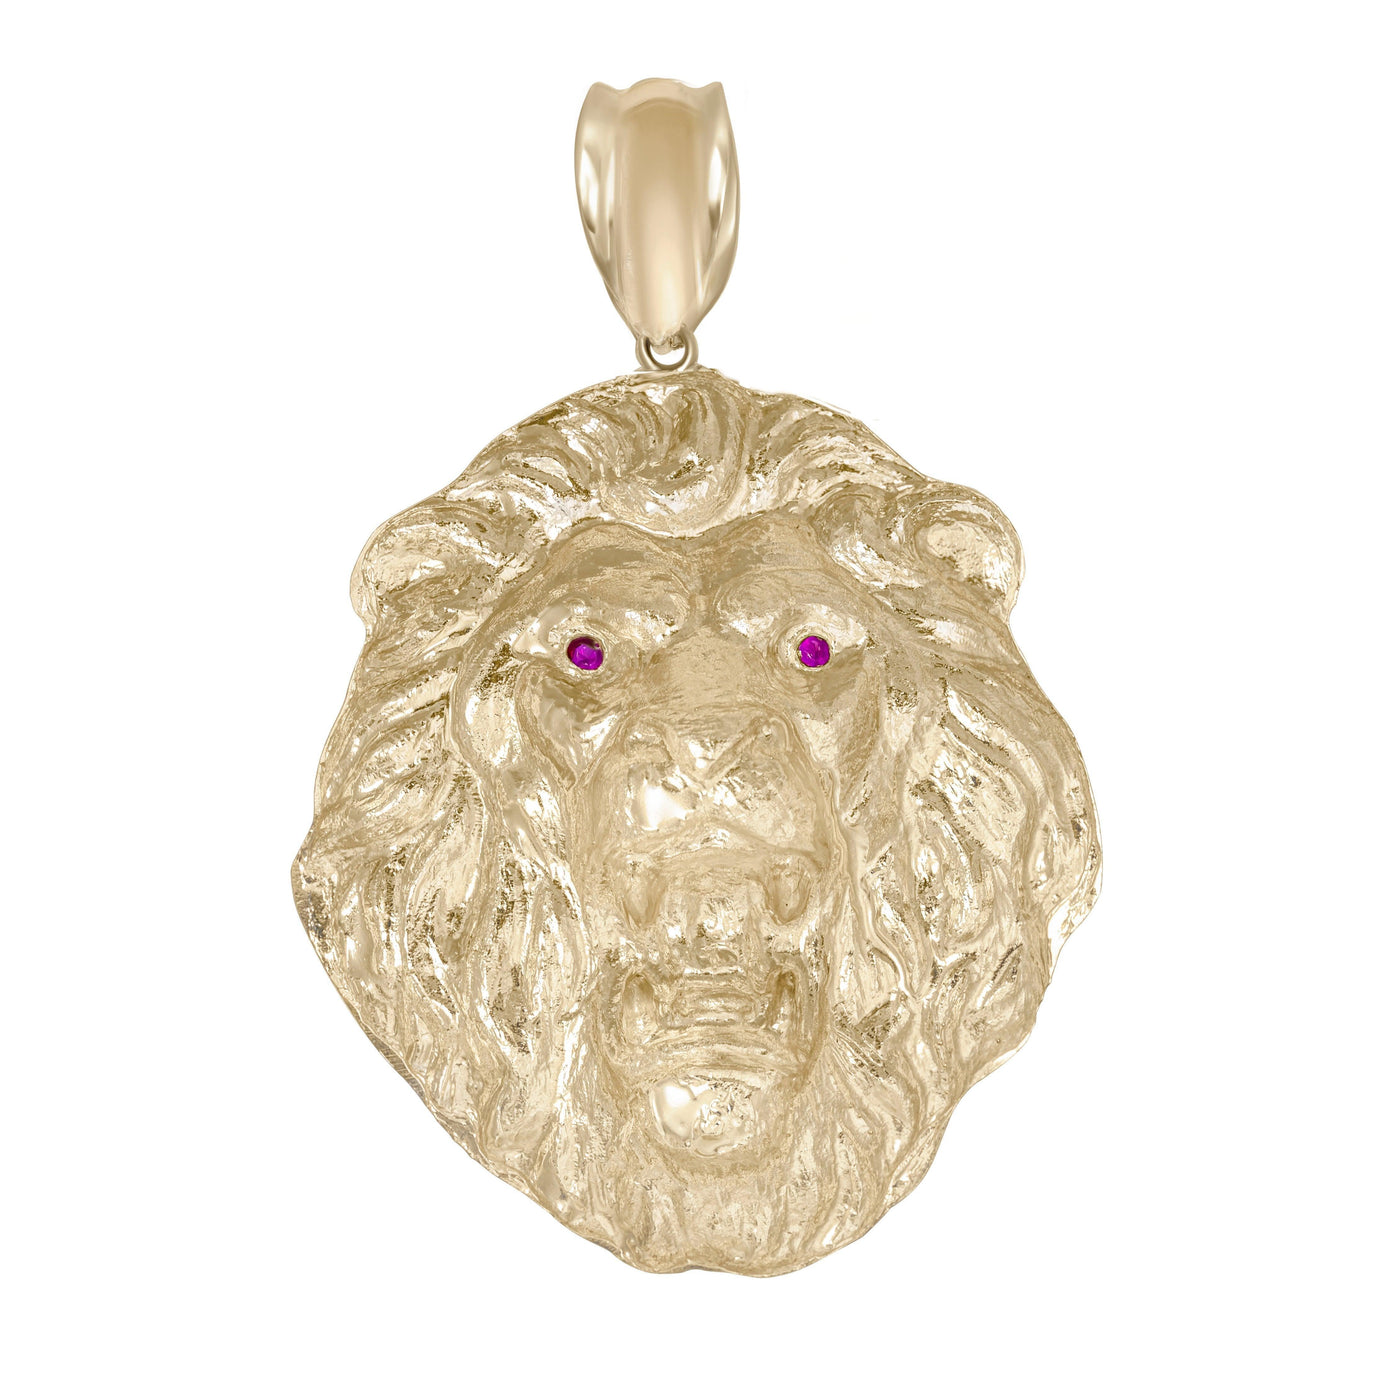 3" Huge CZ Diamond-Cut Roaring Lion Pendant Solid 10K Yellow Gold - bayamjewelry